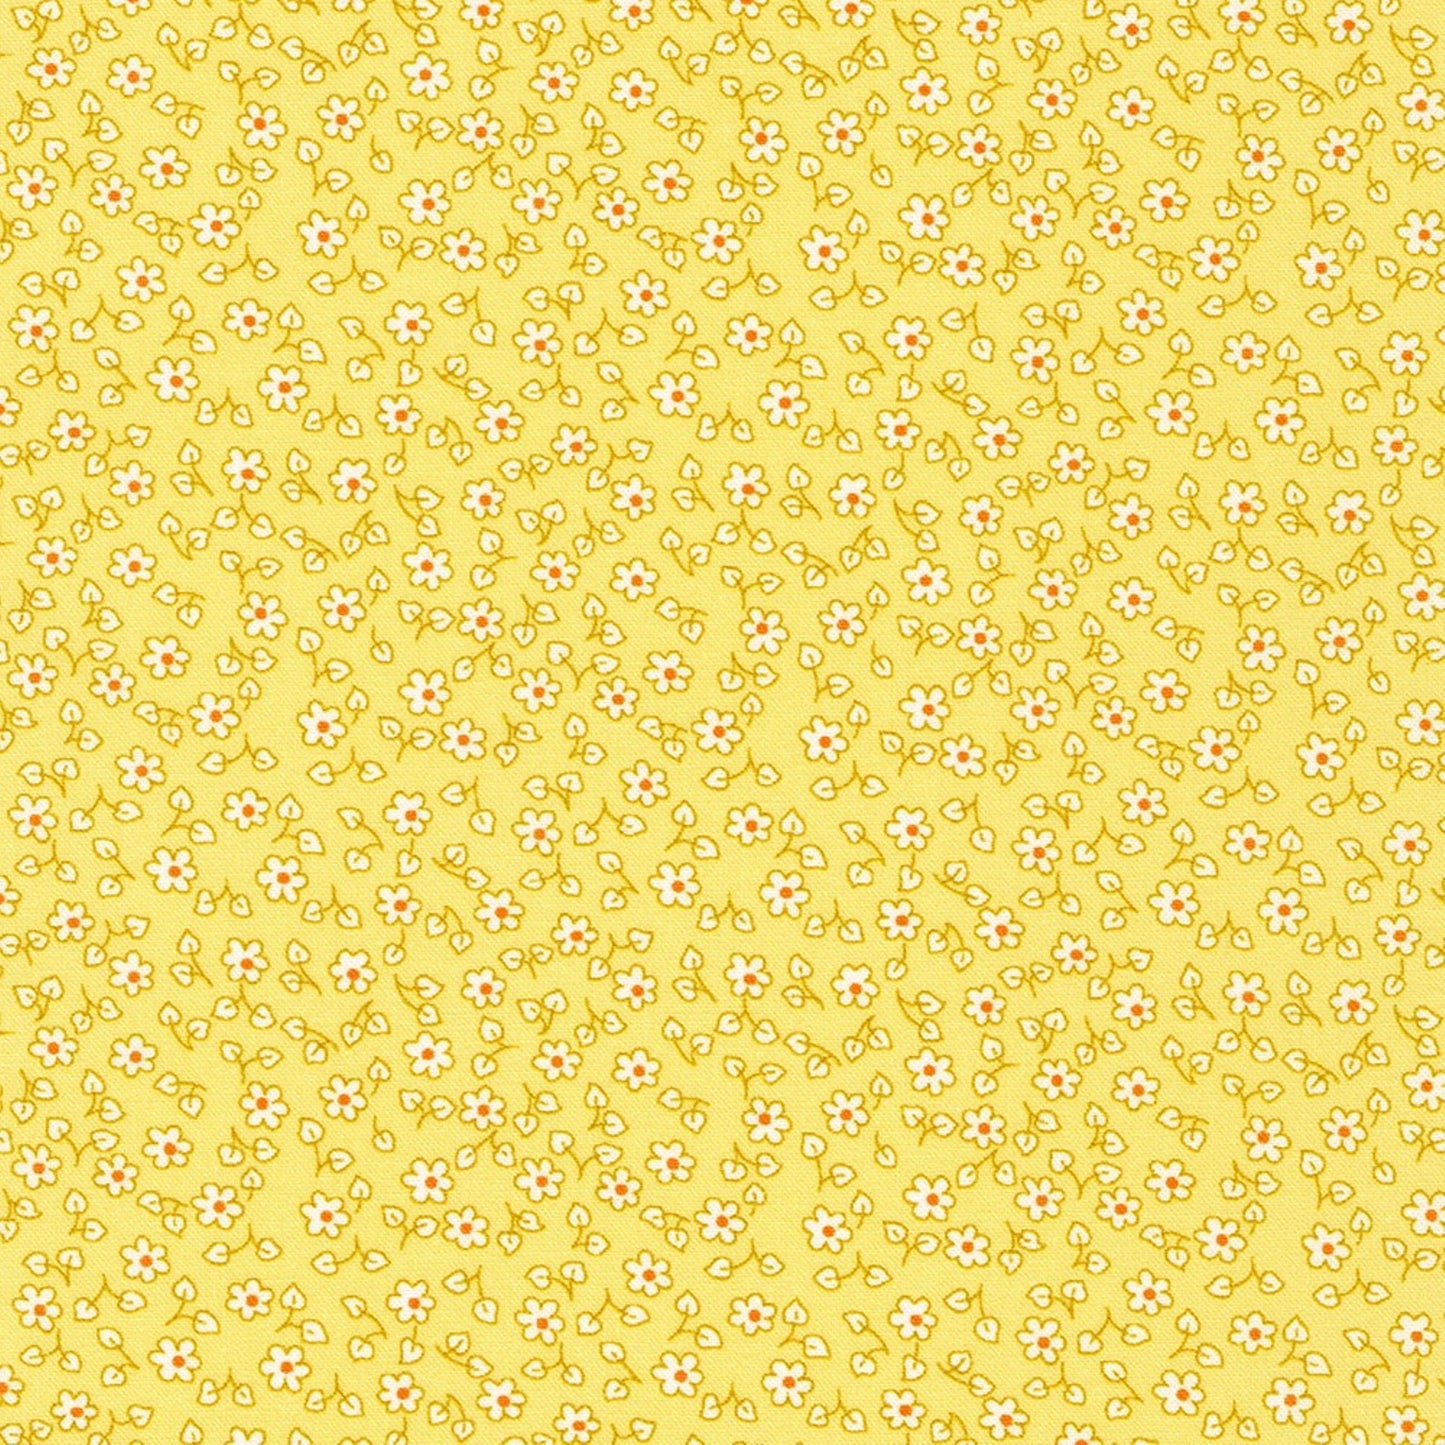 Little Blossoms Debbie Beaves 1930's reproduction bundle - 4 teal yellow Fat Quarters Kaufman cotton quilt fabric